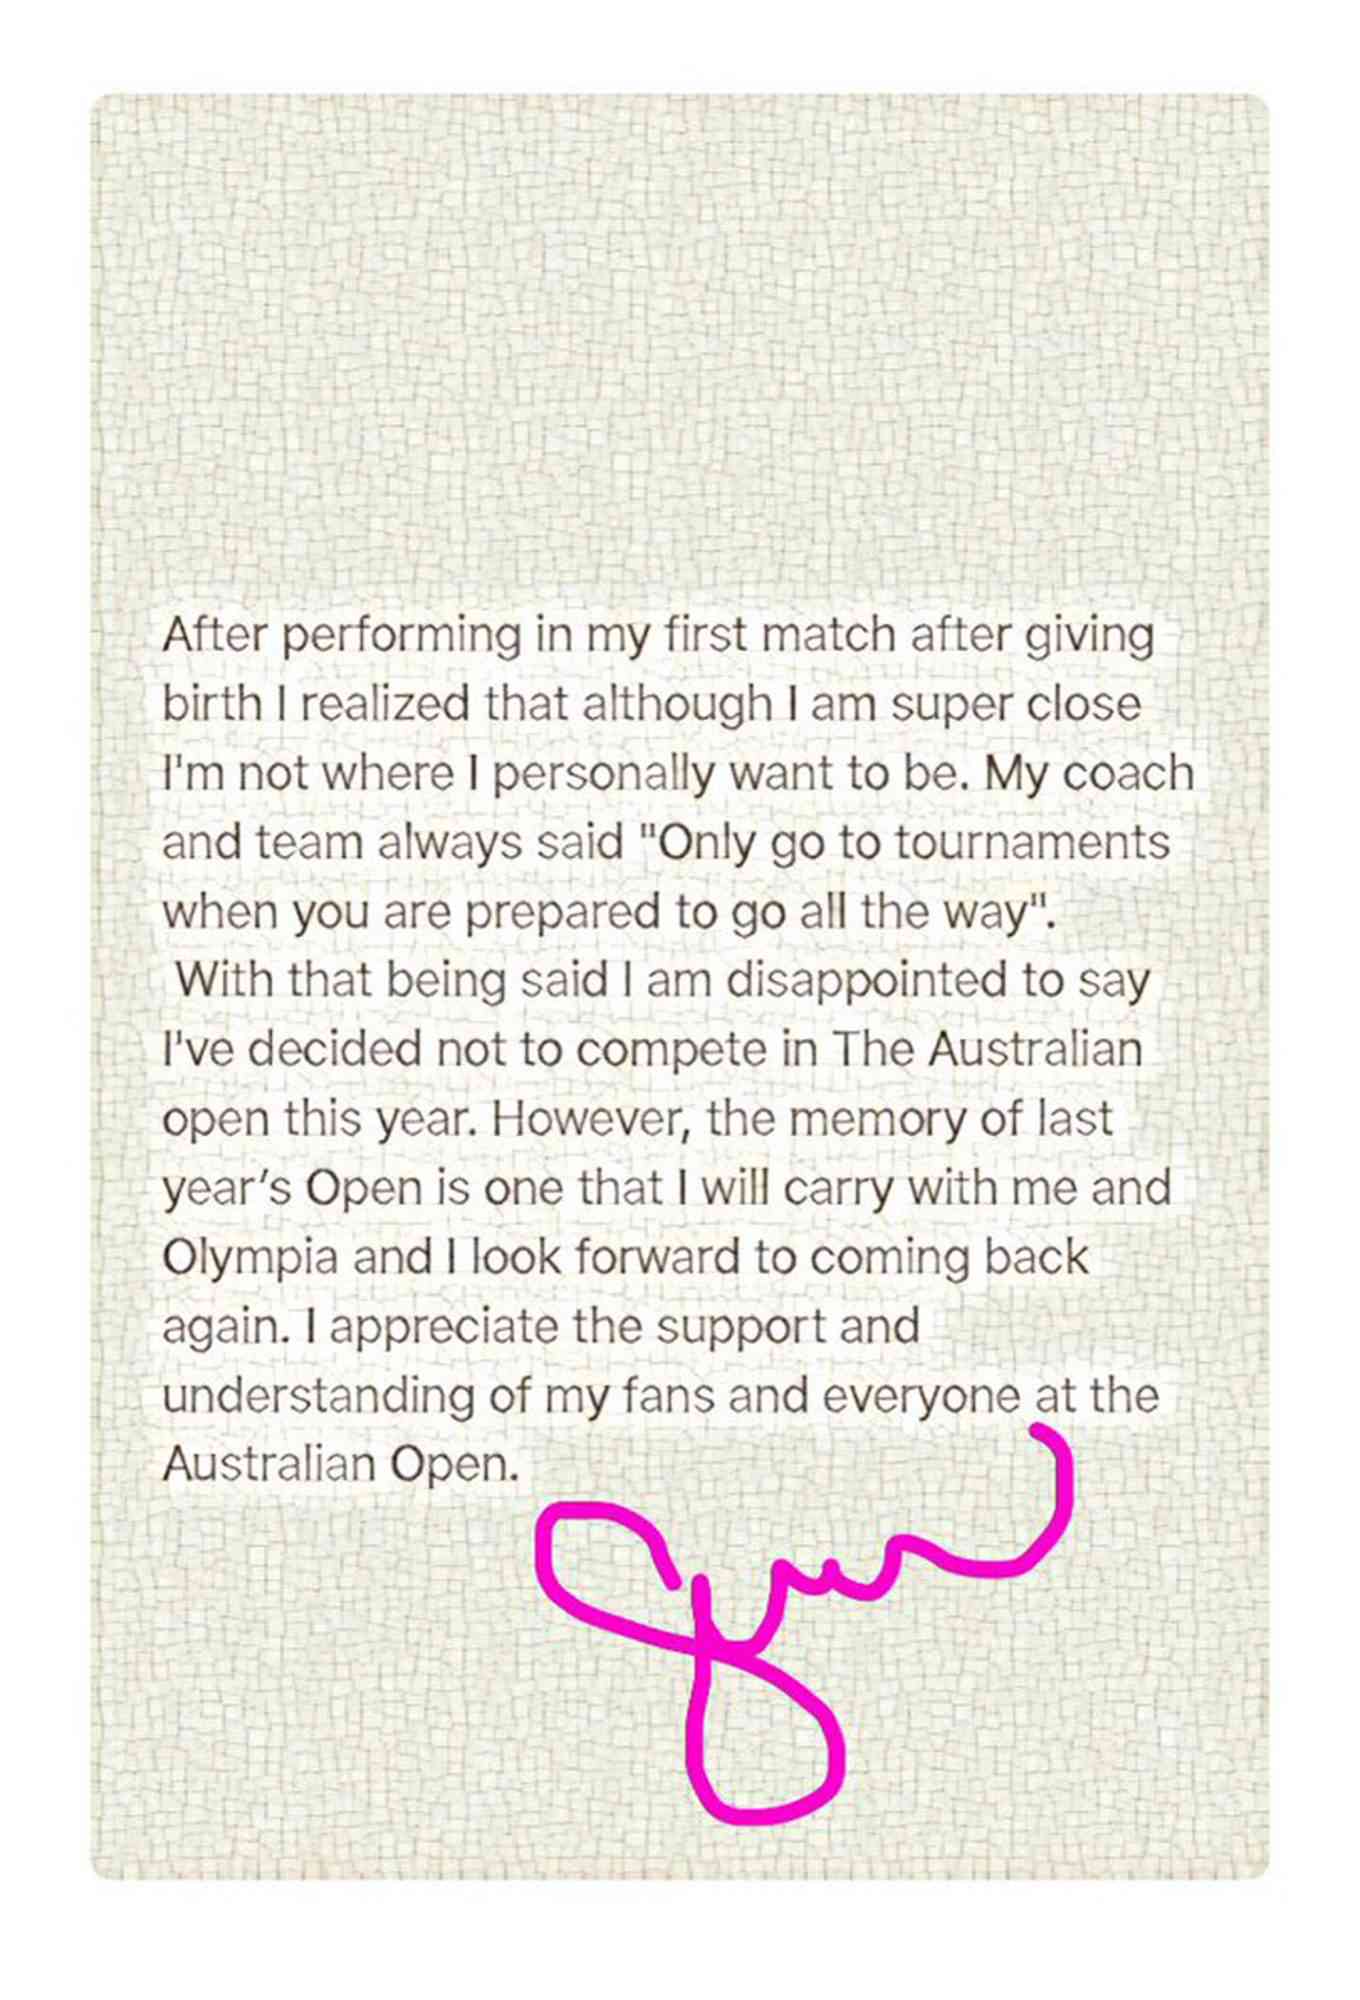 Serena Williams statement